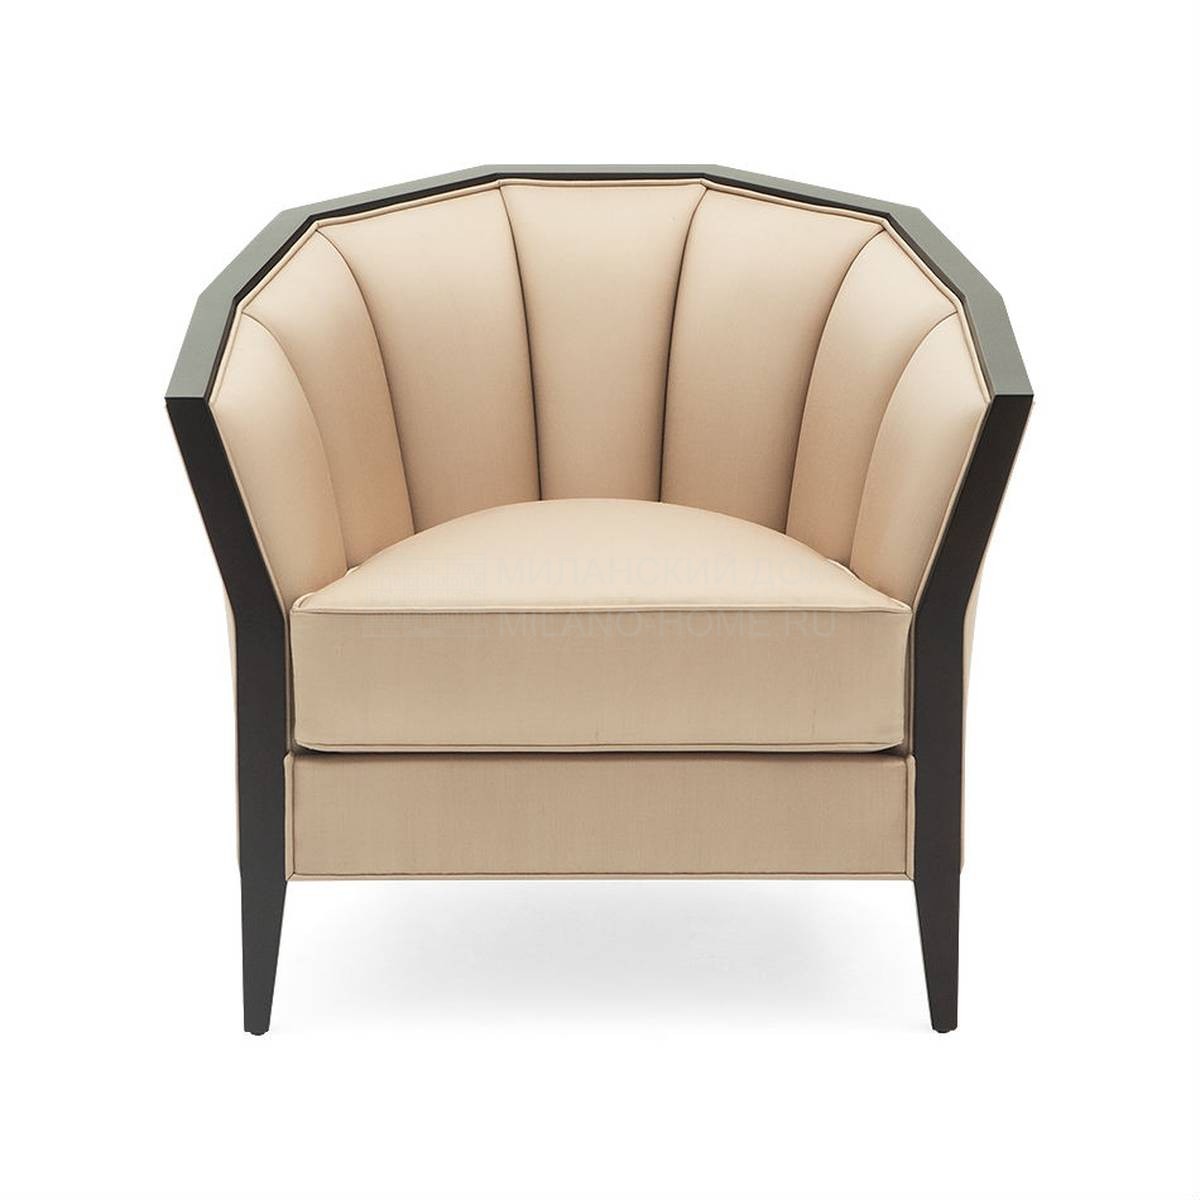 Кожаное кресло Iribe armchair из США фабрики CHRISTOPHER GUY